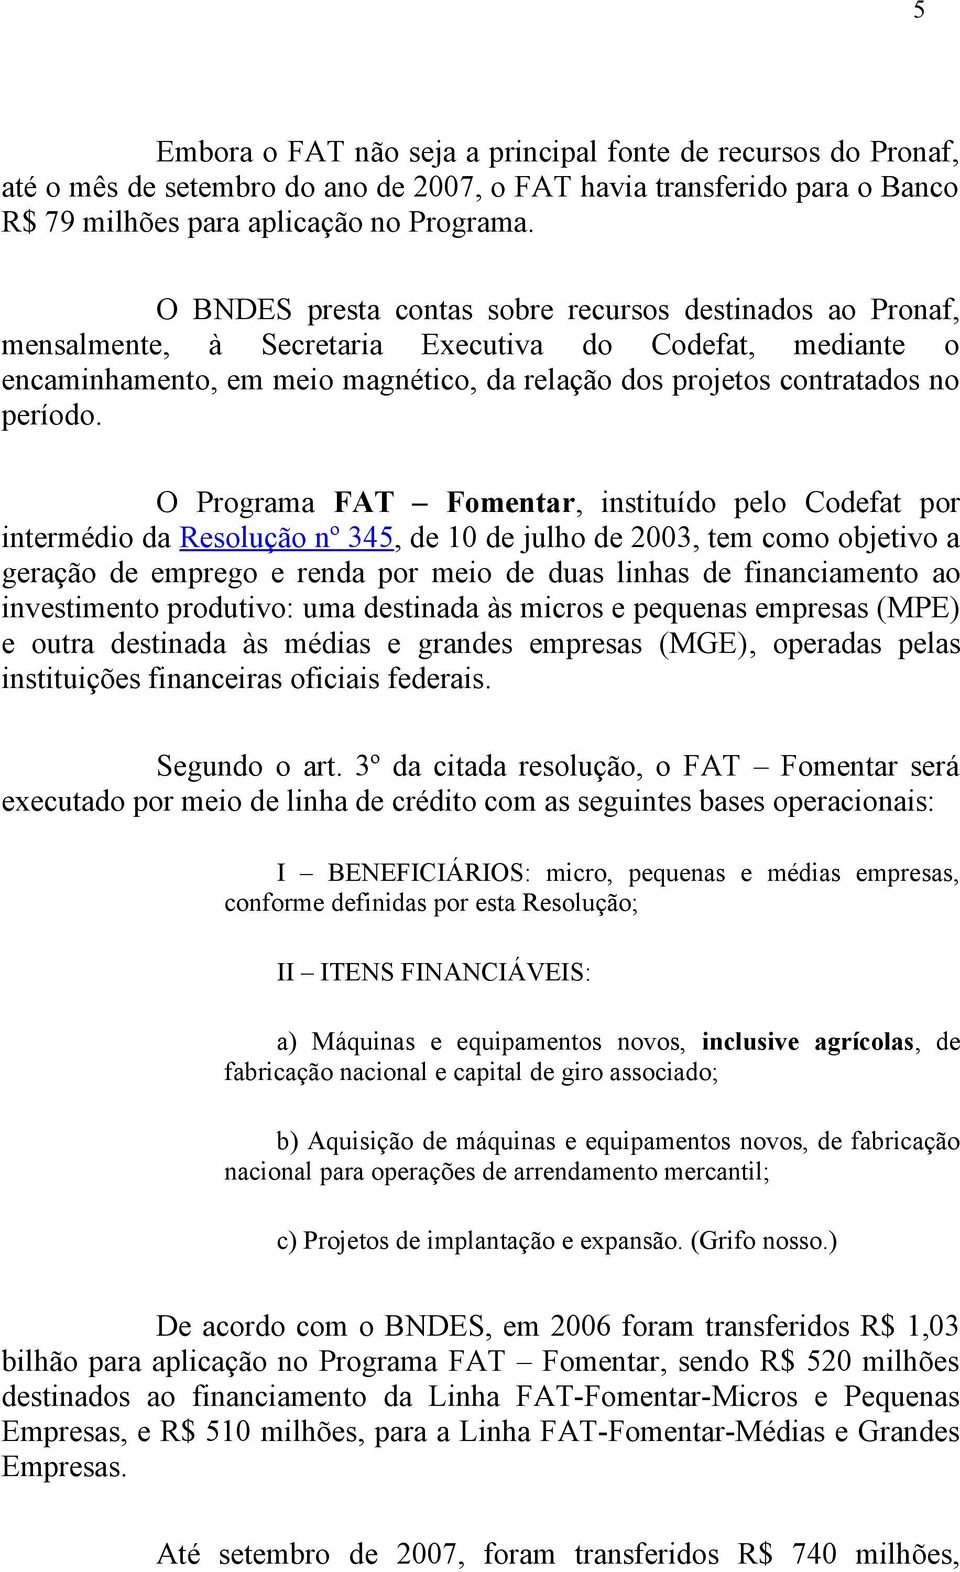 O Programa FAT Fomentar, instituído pelo Codefat por intermédio da Resolução nº 345, de 10 de julho de 2003, tem como objetivo a geração de emprego e renda por meio de duas linhas de financiamento ao